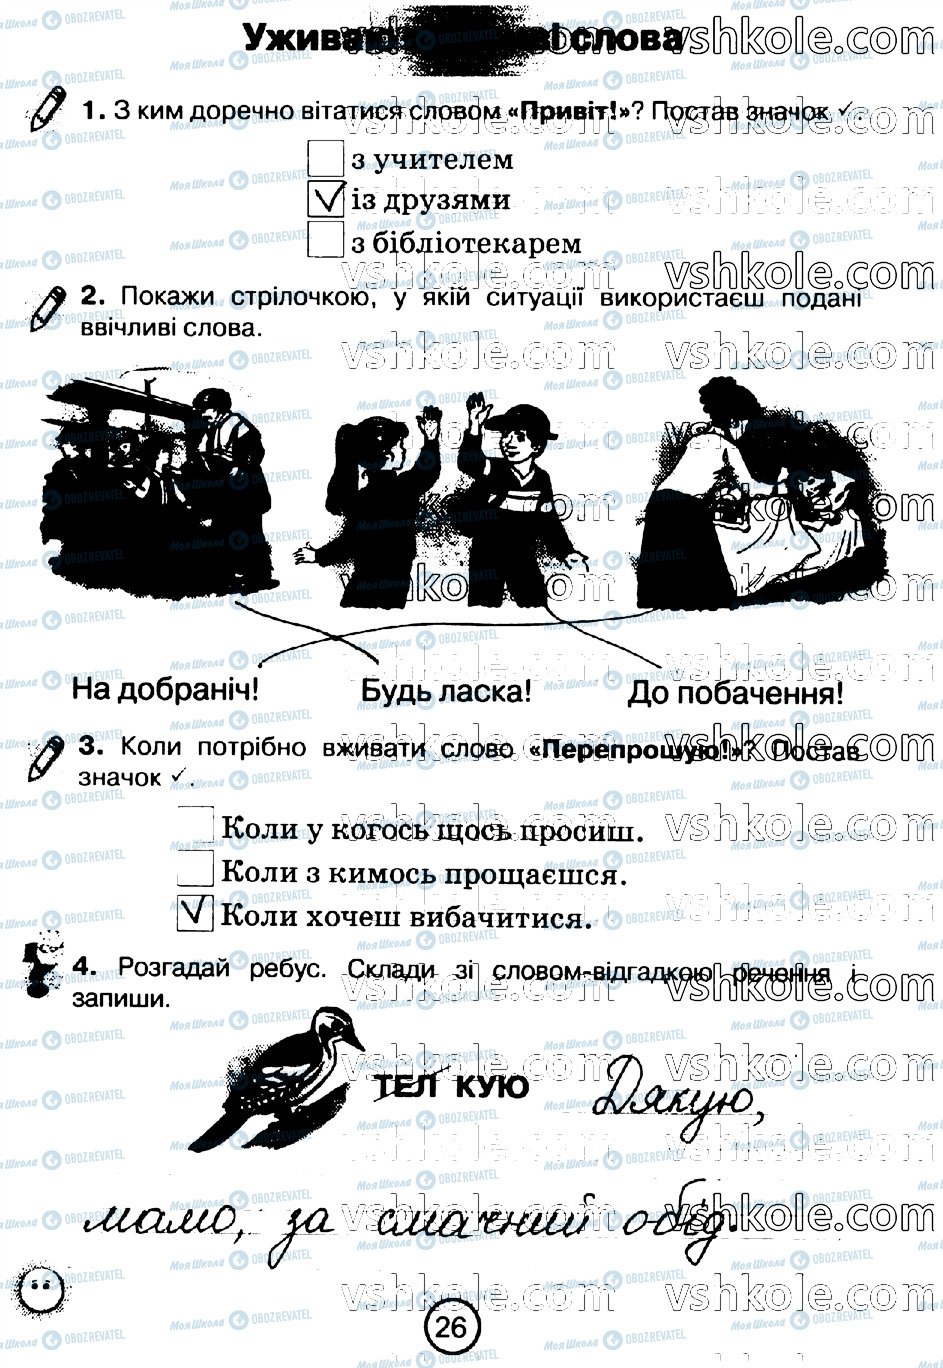 ГДЗ Укр мова 2 класс страница стр26